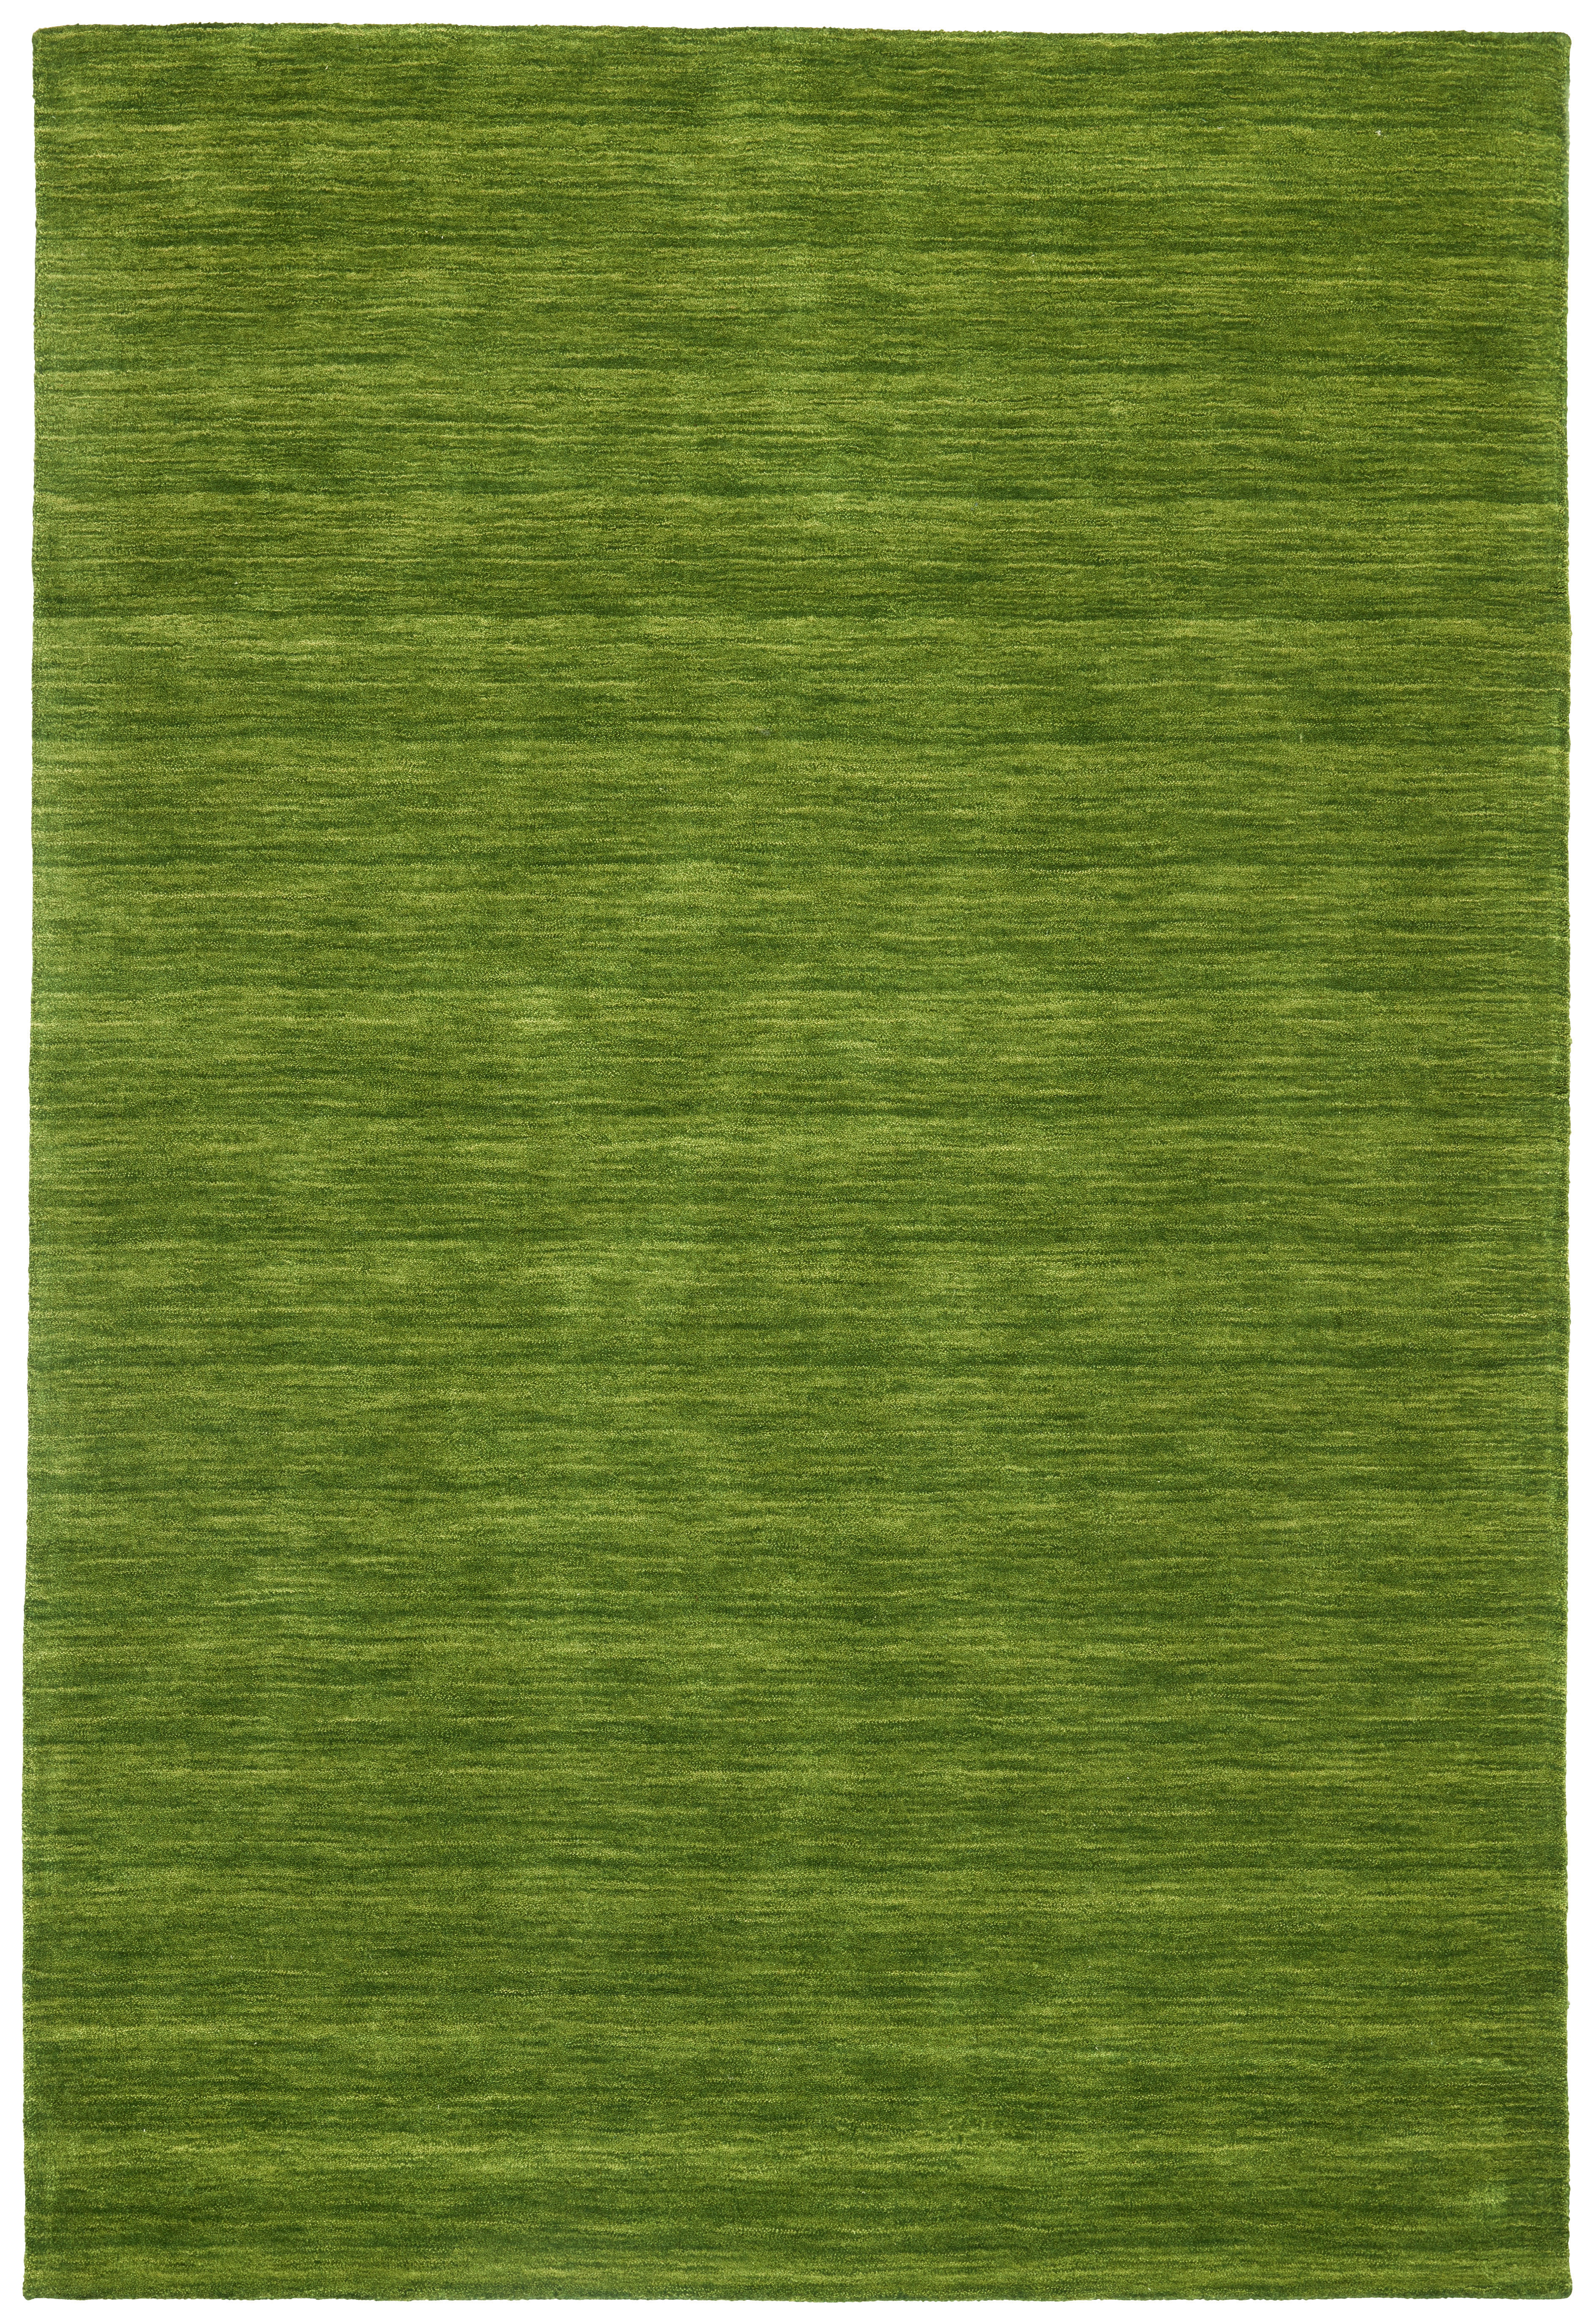 Cazaris ORIENTÁLNÍ KOBEREC, 90/160 cm, zelená - zelená